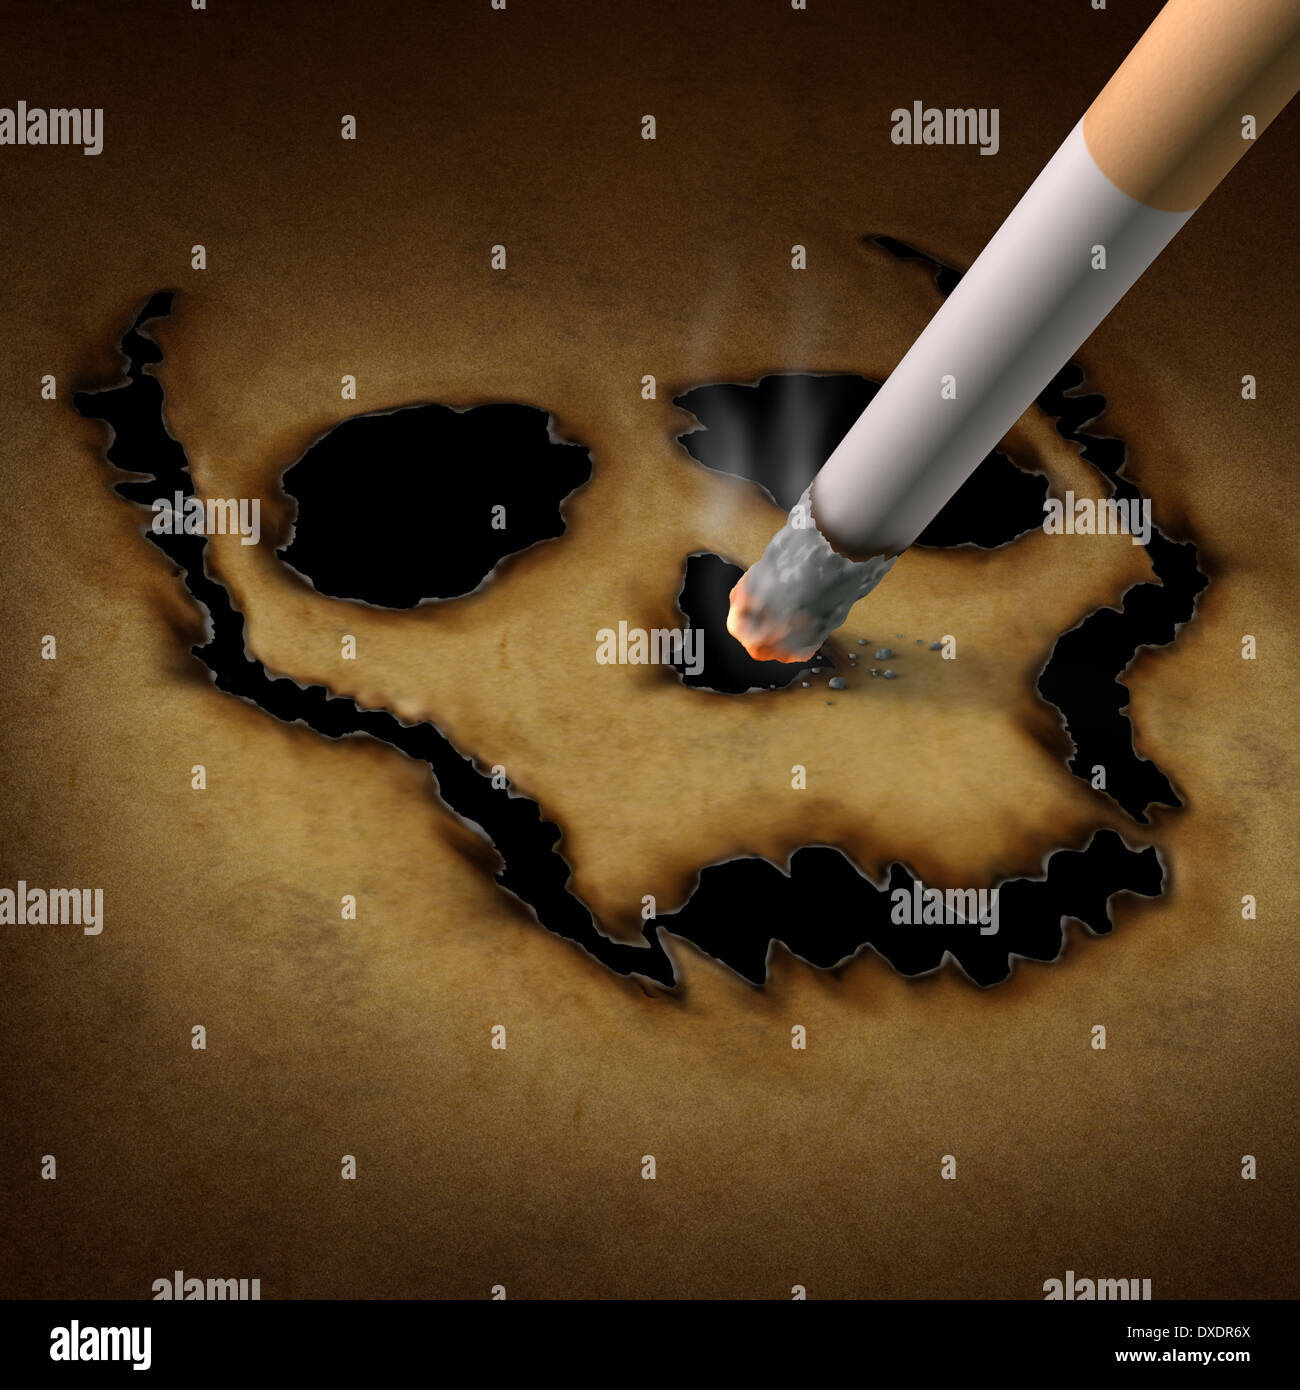 Danger de fumer une cigarette comme concept de la gravure d'un crâne humain symbole de vieux grunge papier comme une métaphore de l'exposition à la fumée toxique causant le cancer du poumon et mortel pour la santé. Banque D'Images